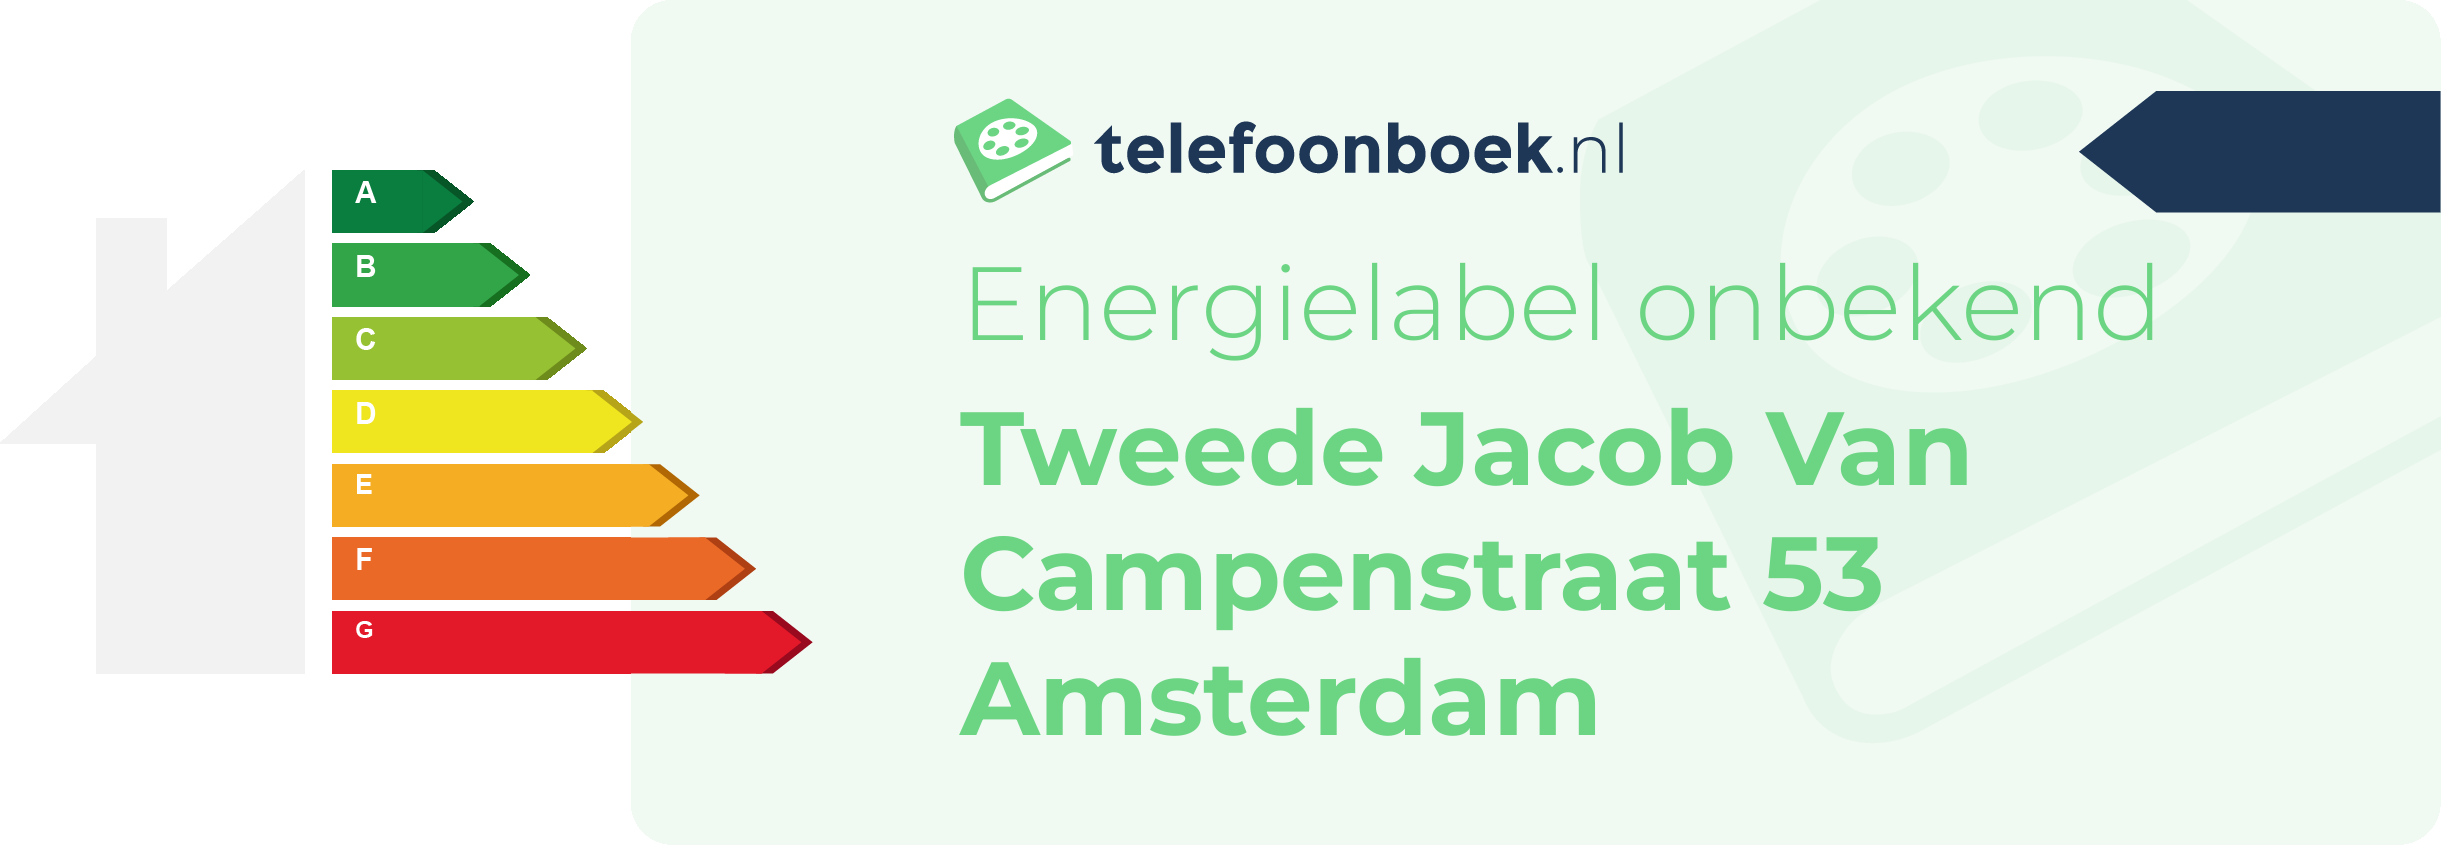 Energielabel Tweede Jacob Van Campenstraat 53 Amsterdam